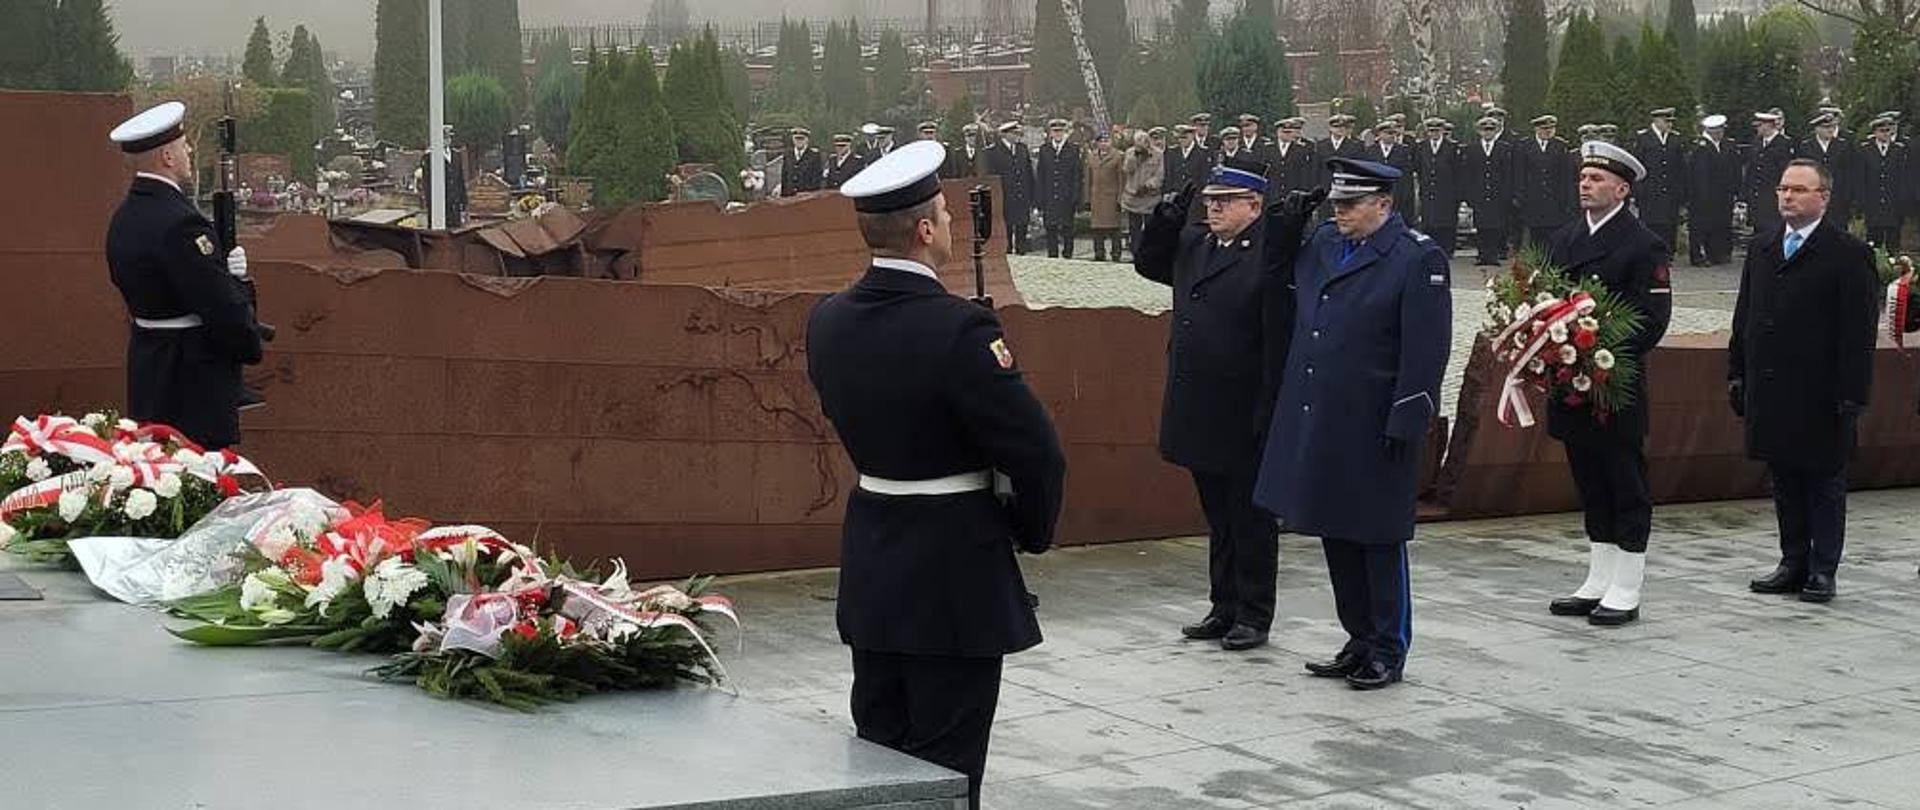 Żołnierze z karabinami stoją przy grobie na którym leżą wiązanki policjant i strażak stoją przed grobem oddając honor za nimi stoi żołnierz z wiązanką oraz mężczyzna.